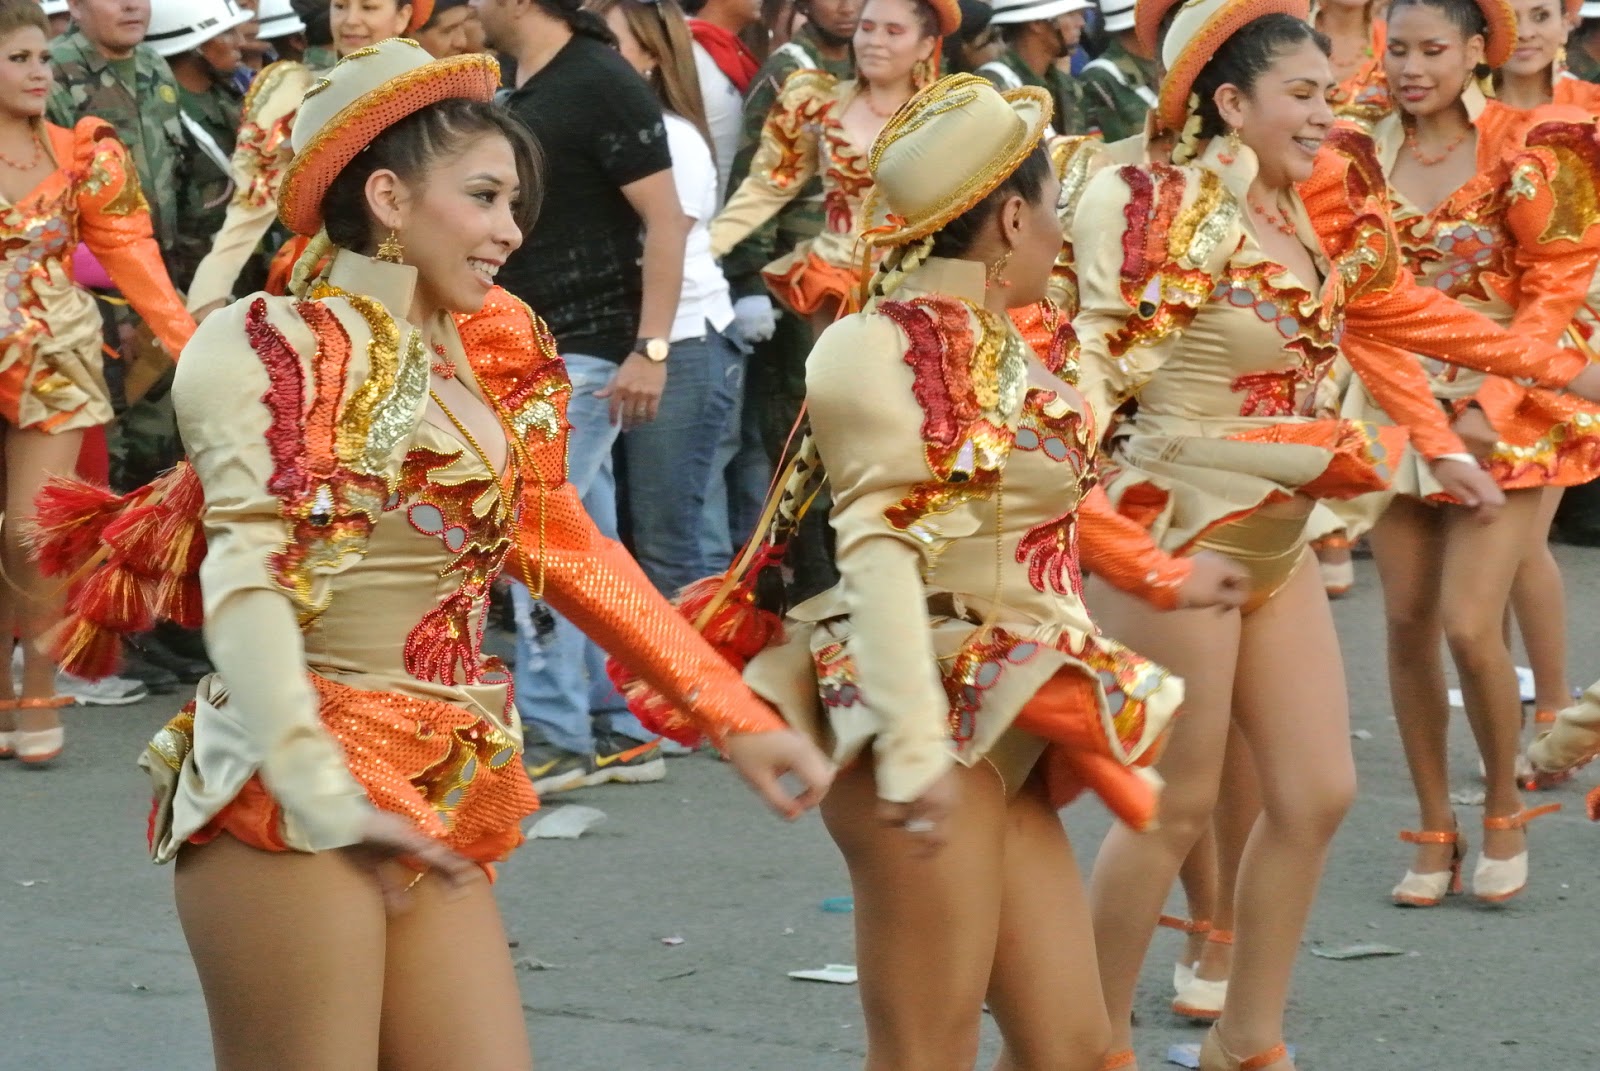 Los caporales es una danza post - hispánica, cuyas raíces están indisolublemente ligadas a la Saya de los negros, que lo practican los afrobolivianos que habitan en la región de los Yungas de La Paz.